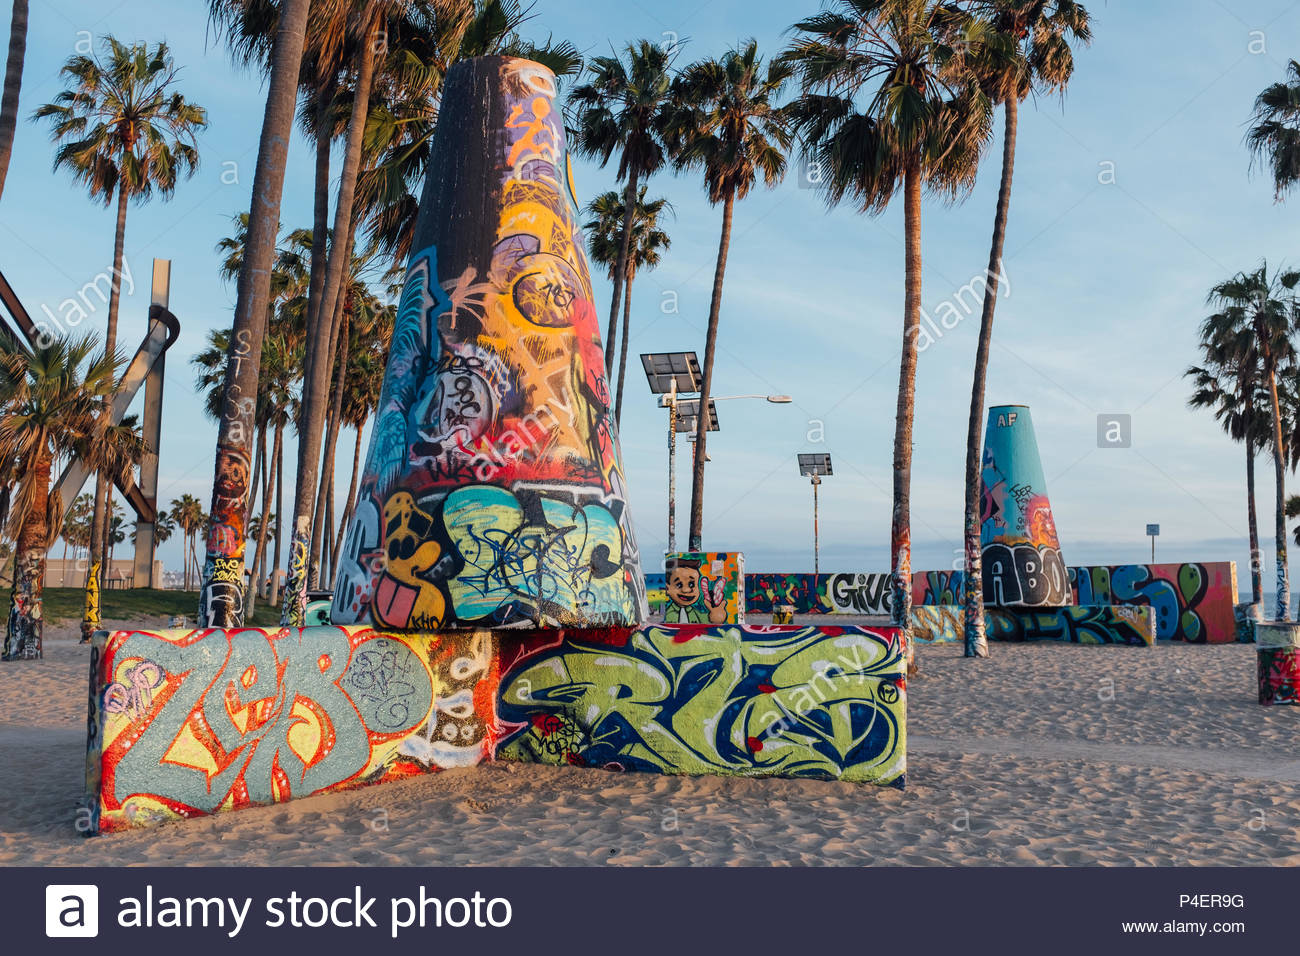 Graffiti Wall In Venice Beach Ca United States Stock Photo